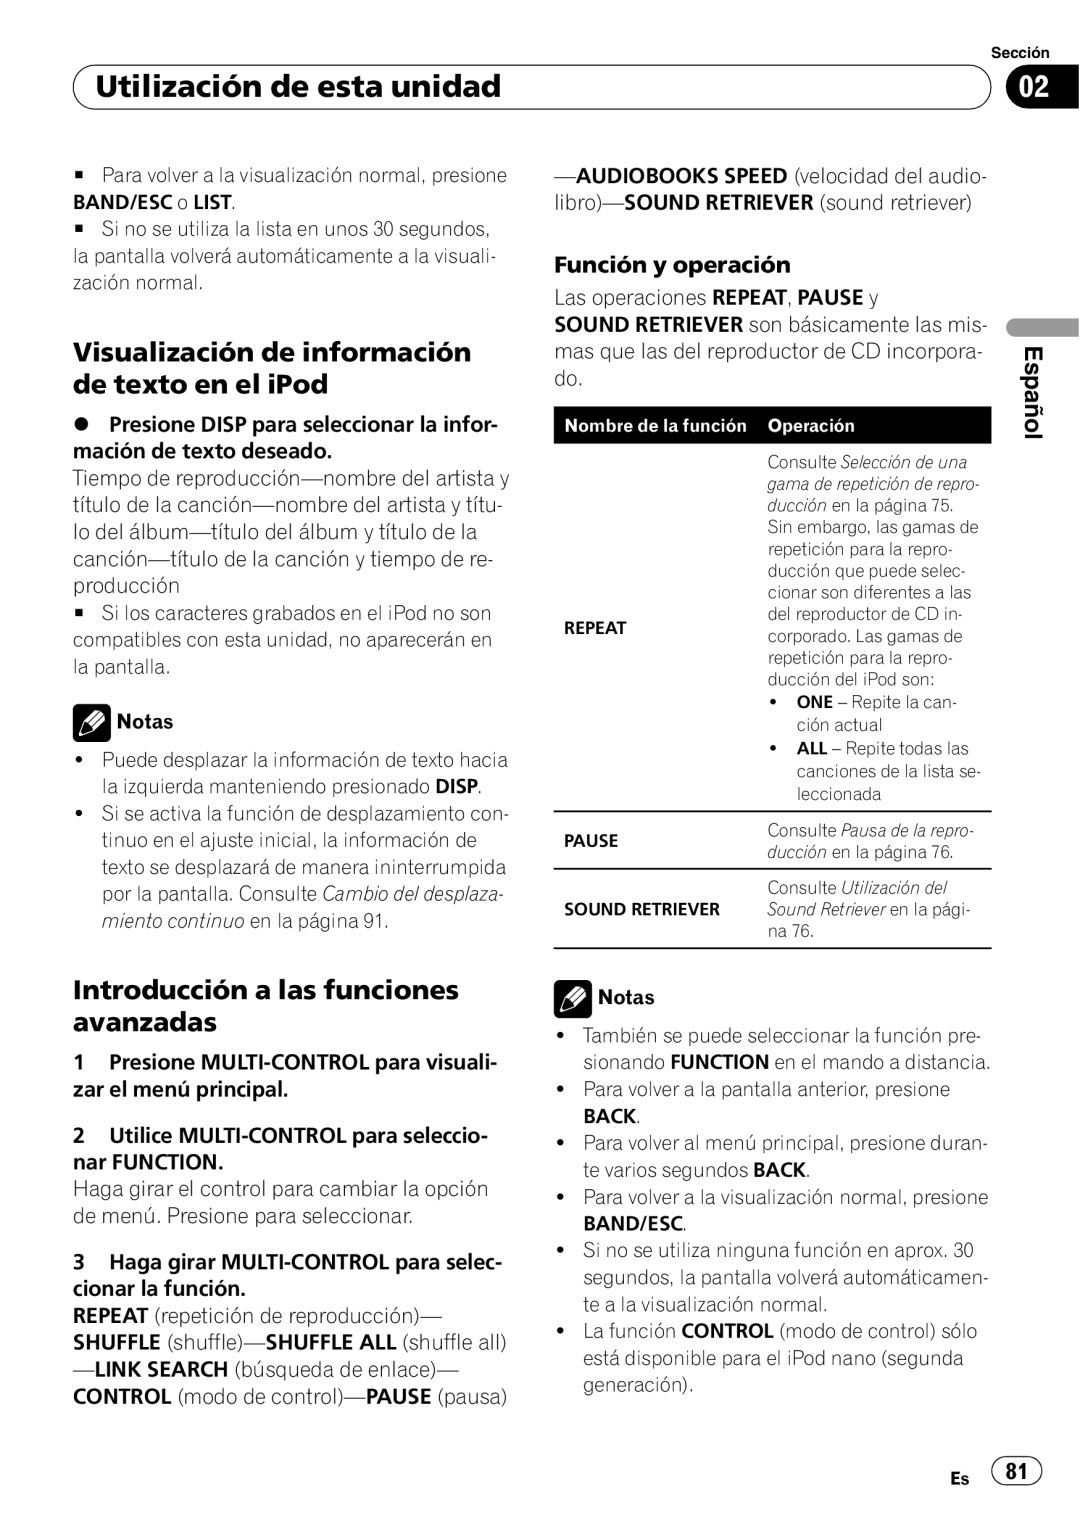 Pioneer DEH-P6000UB operation manual Visualización de información de texto en el iPod, Utilización de esta unidad, Español 